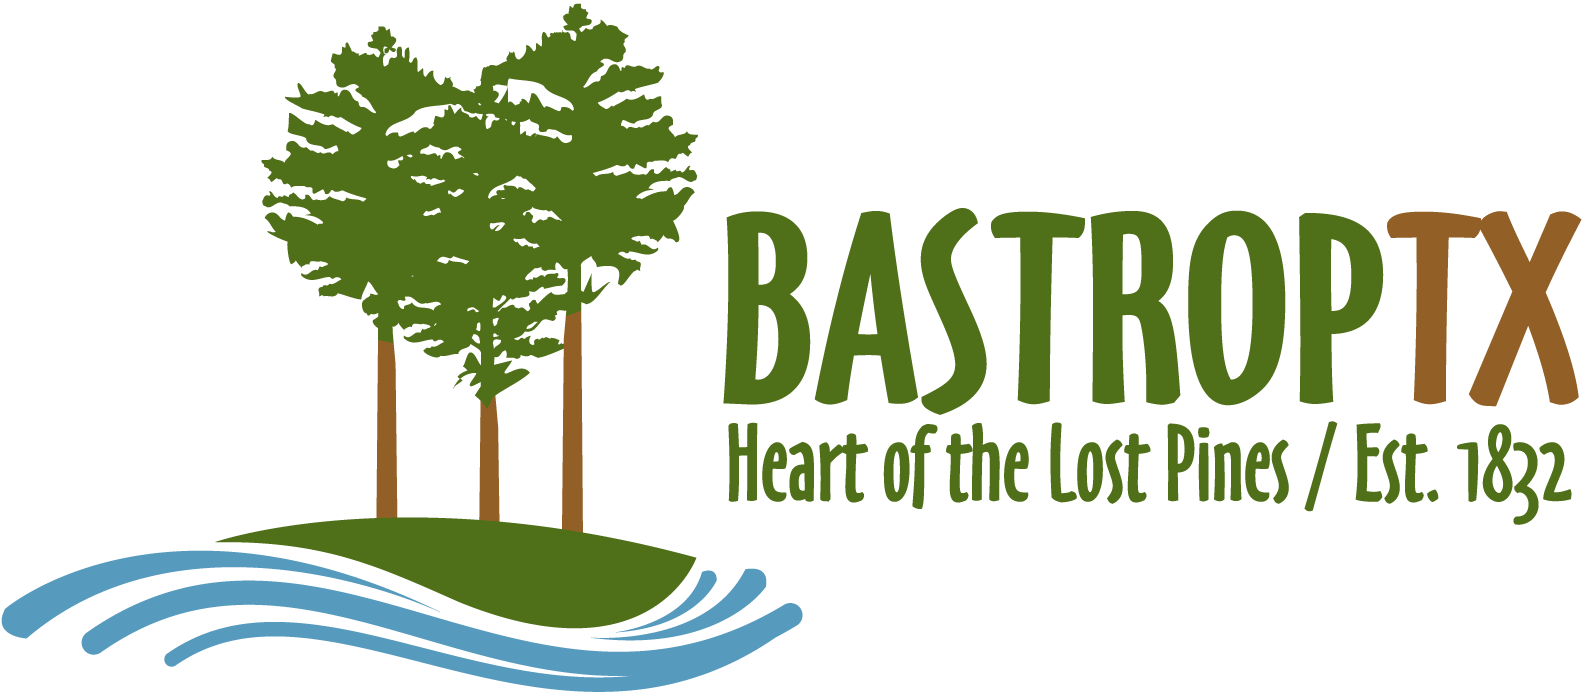 Bastrop, TX Logo